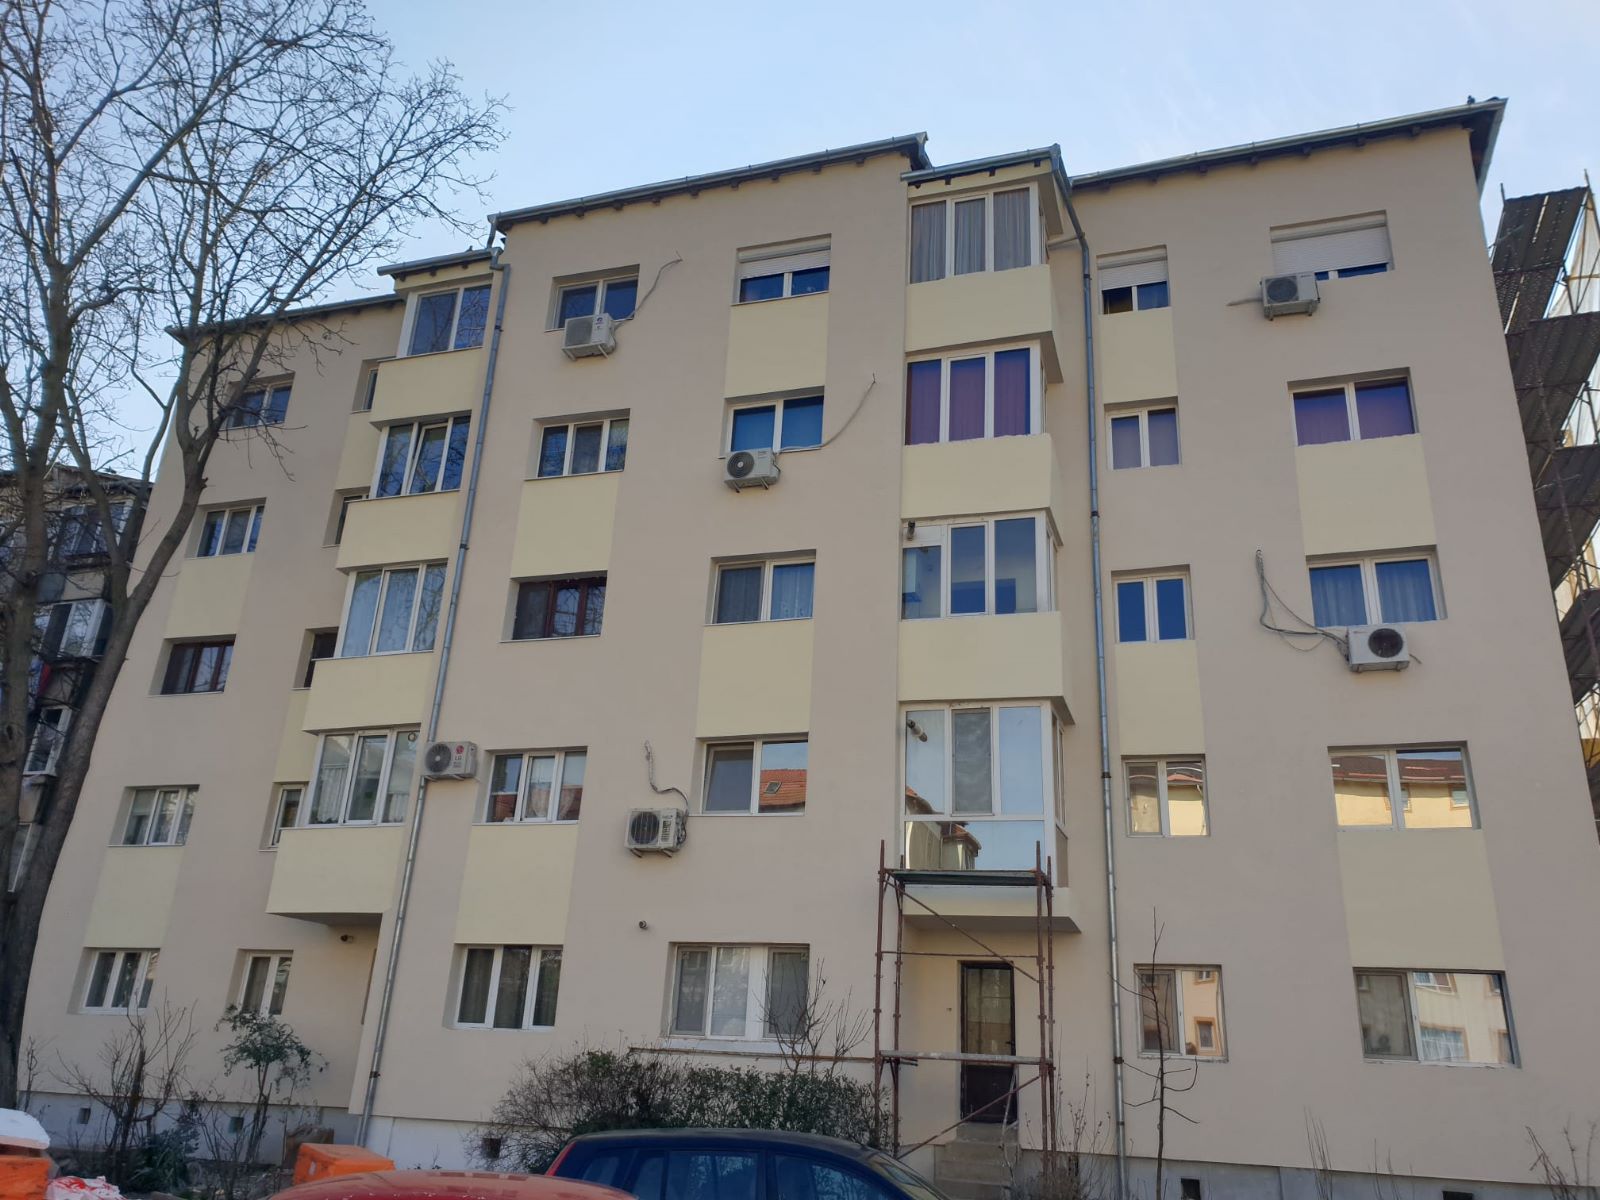 Alte două blocuri intră în reabilitare termică, la Timișoara